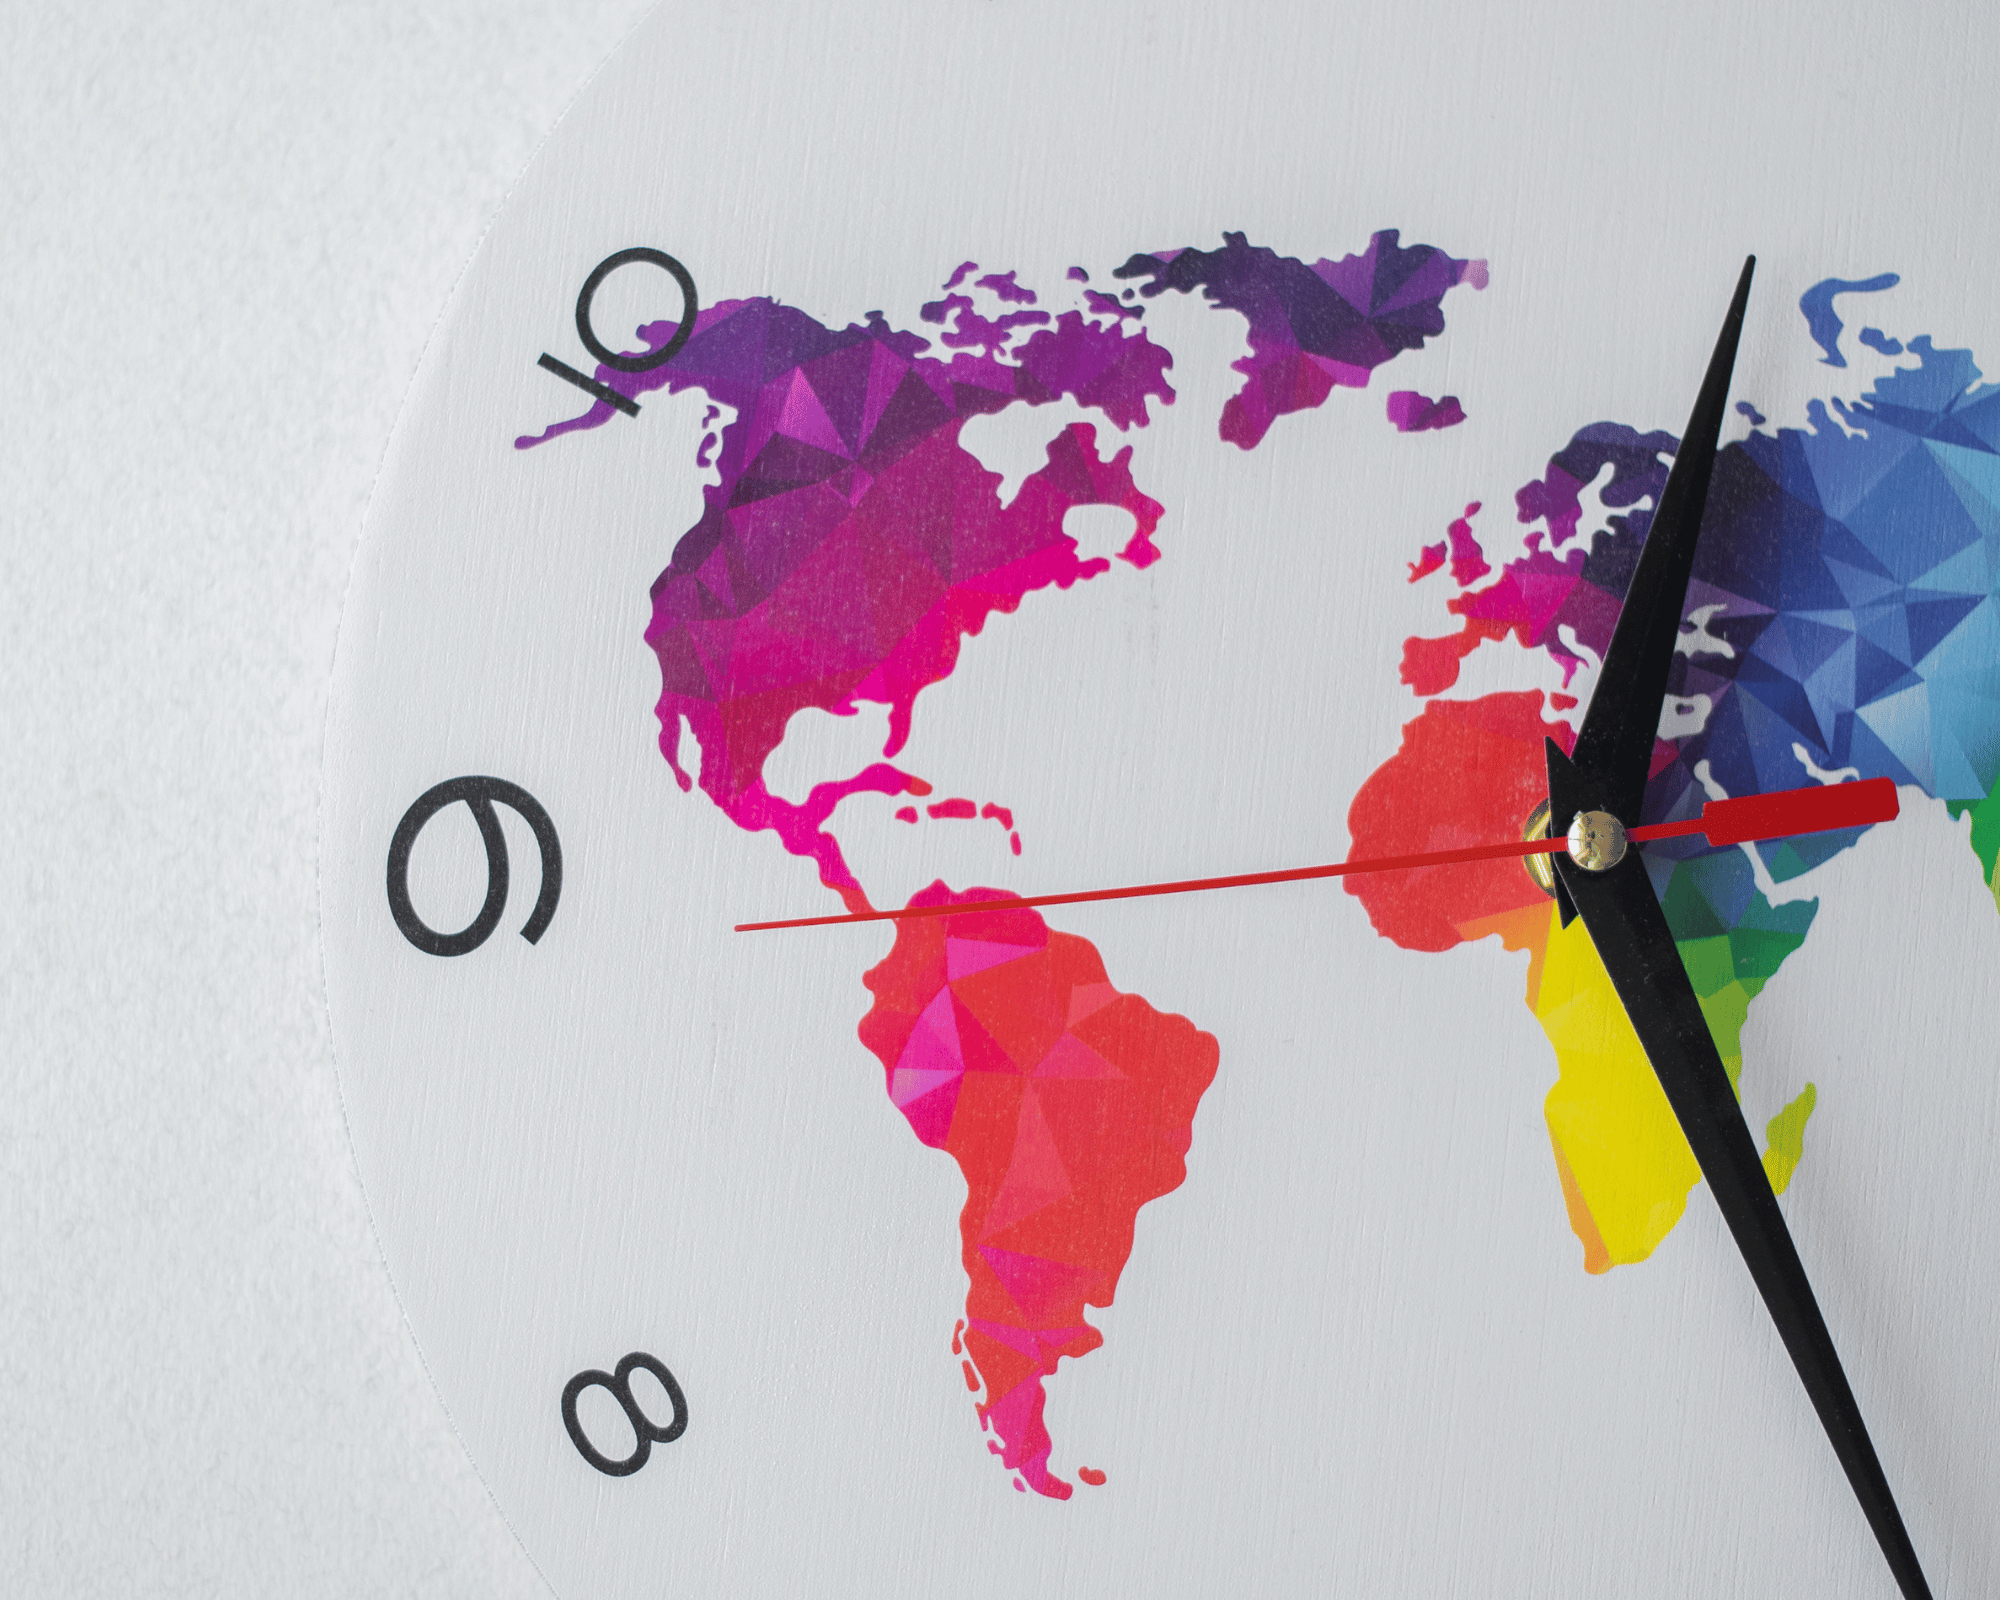 partie d'horloge blanche dont on voit les chiffres du côté du chiffre 9 et sur son cadran il y a une partie de la map monde colorée en multicolore